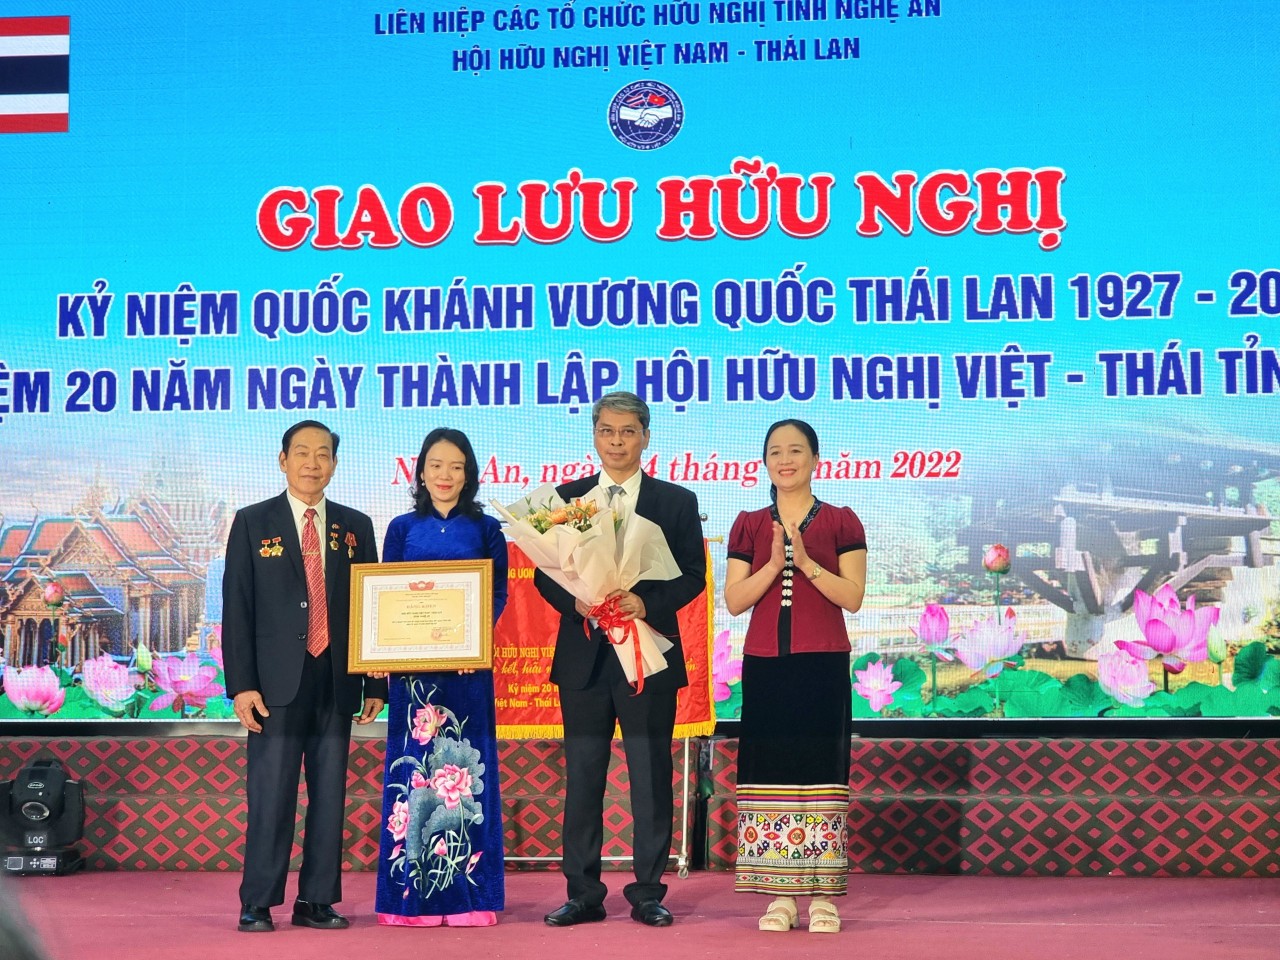 Hội hữu Nghị Việt - Thái tỉnh Nghệ An: Góp phần vun đắp cho quan hệ hai nước